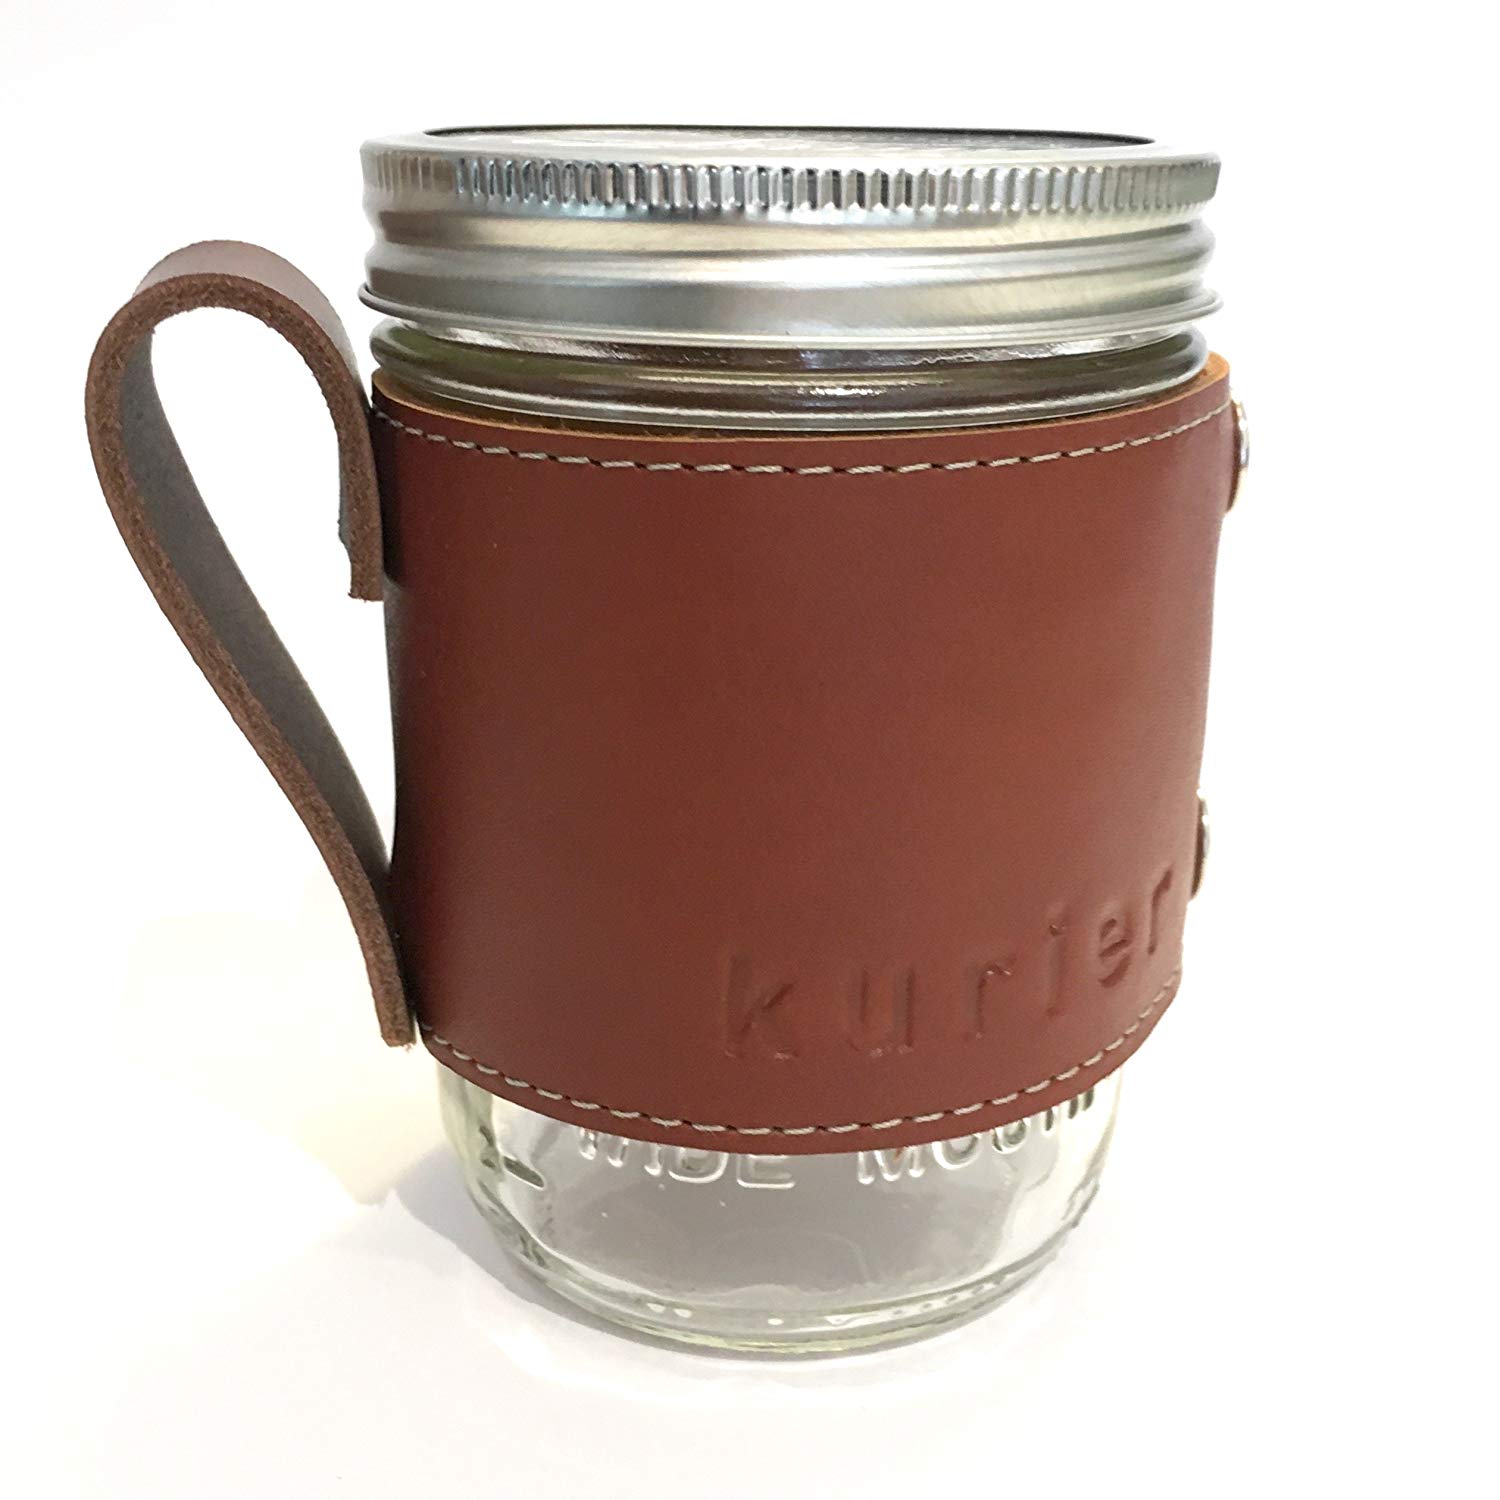 Removable leather canning jar holder.